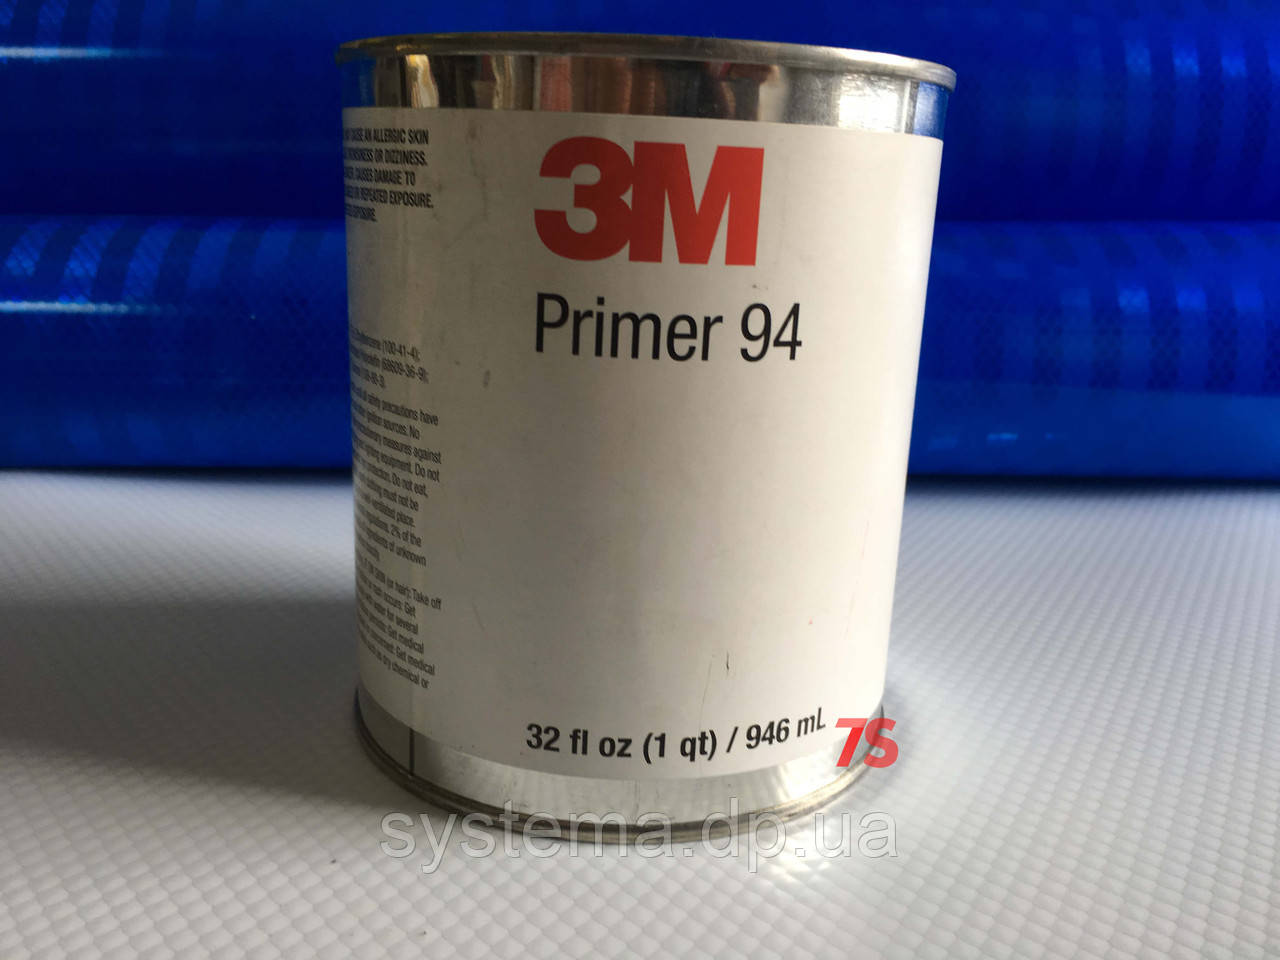 3M™ 94 Primer - праймер для підвищення адгезії стрічок і плівок 3M™, банку 946,3 мл